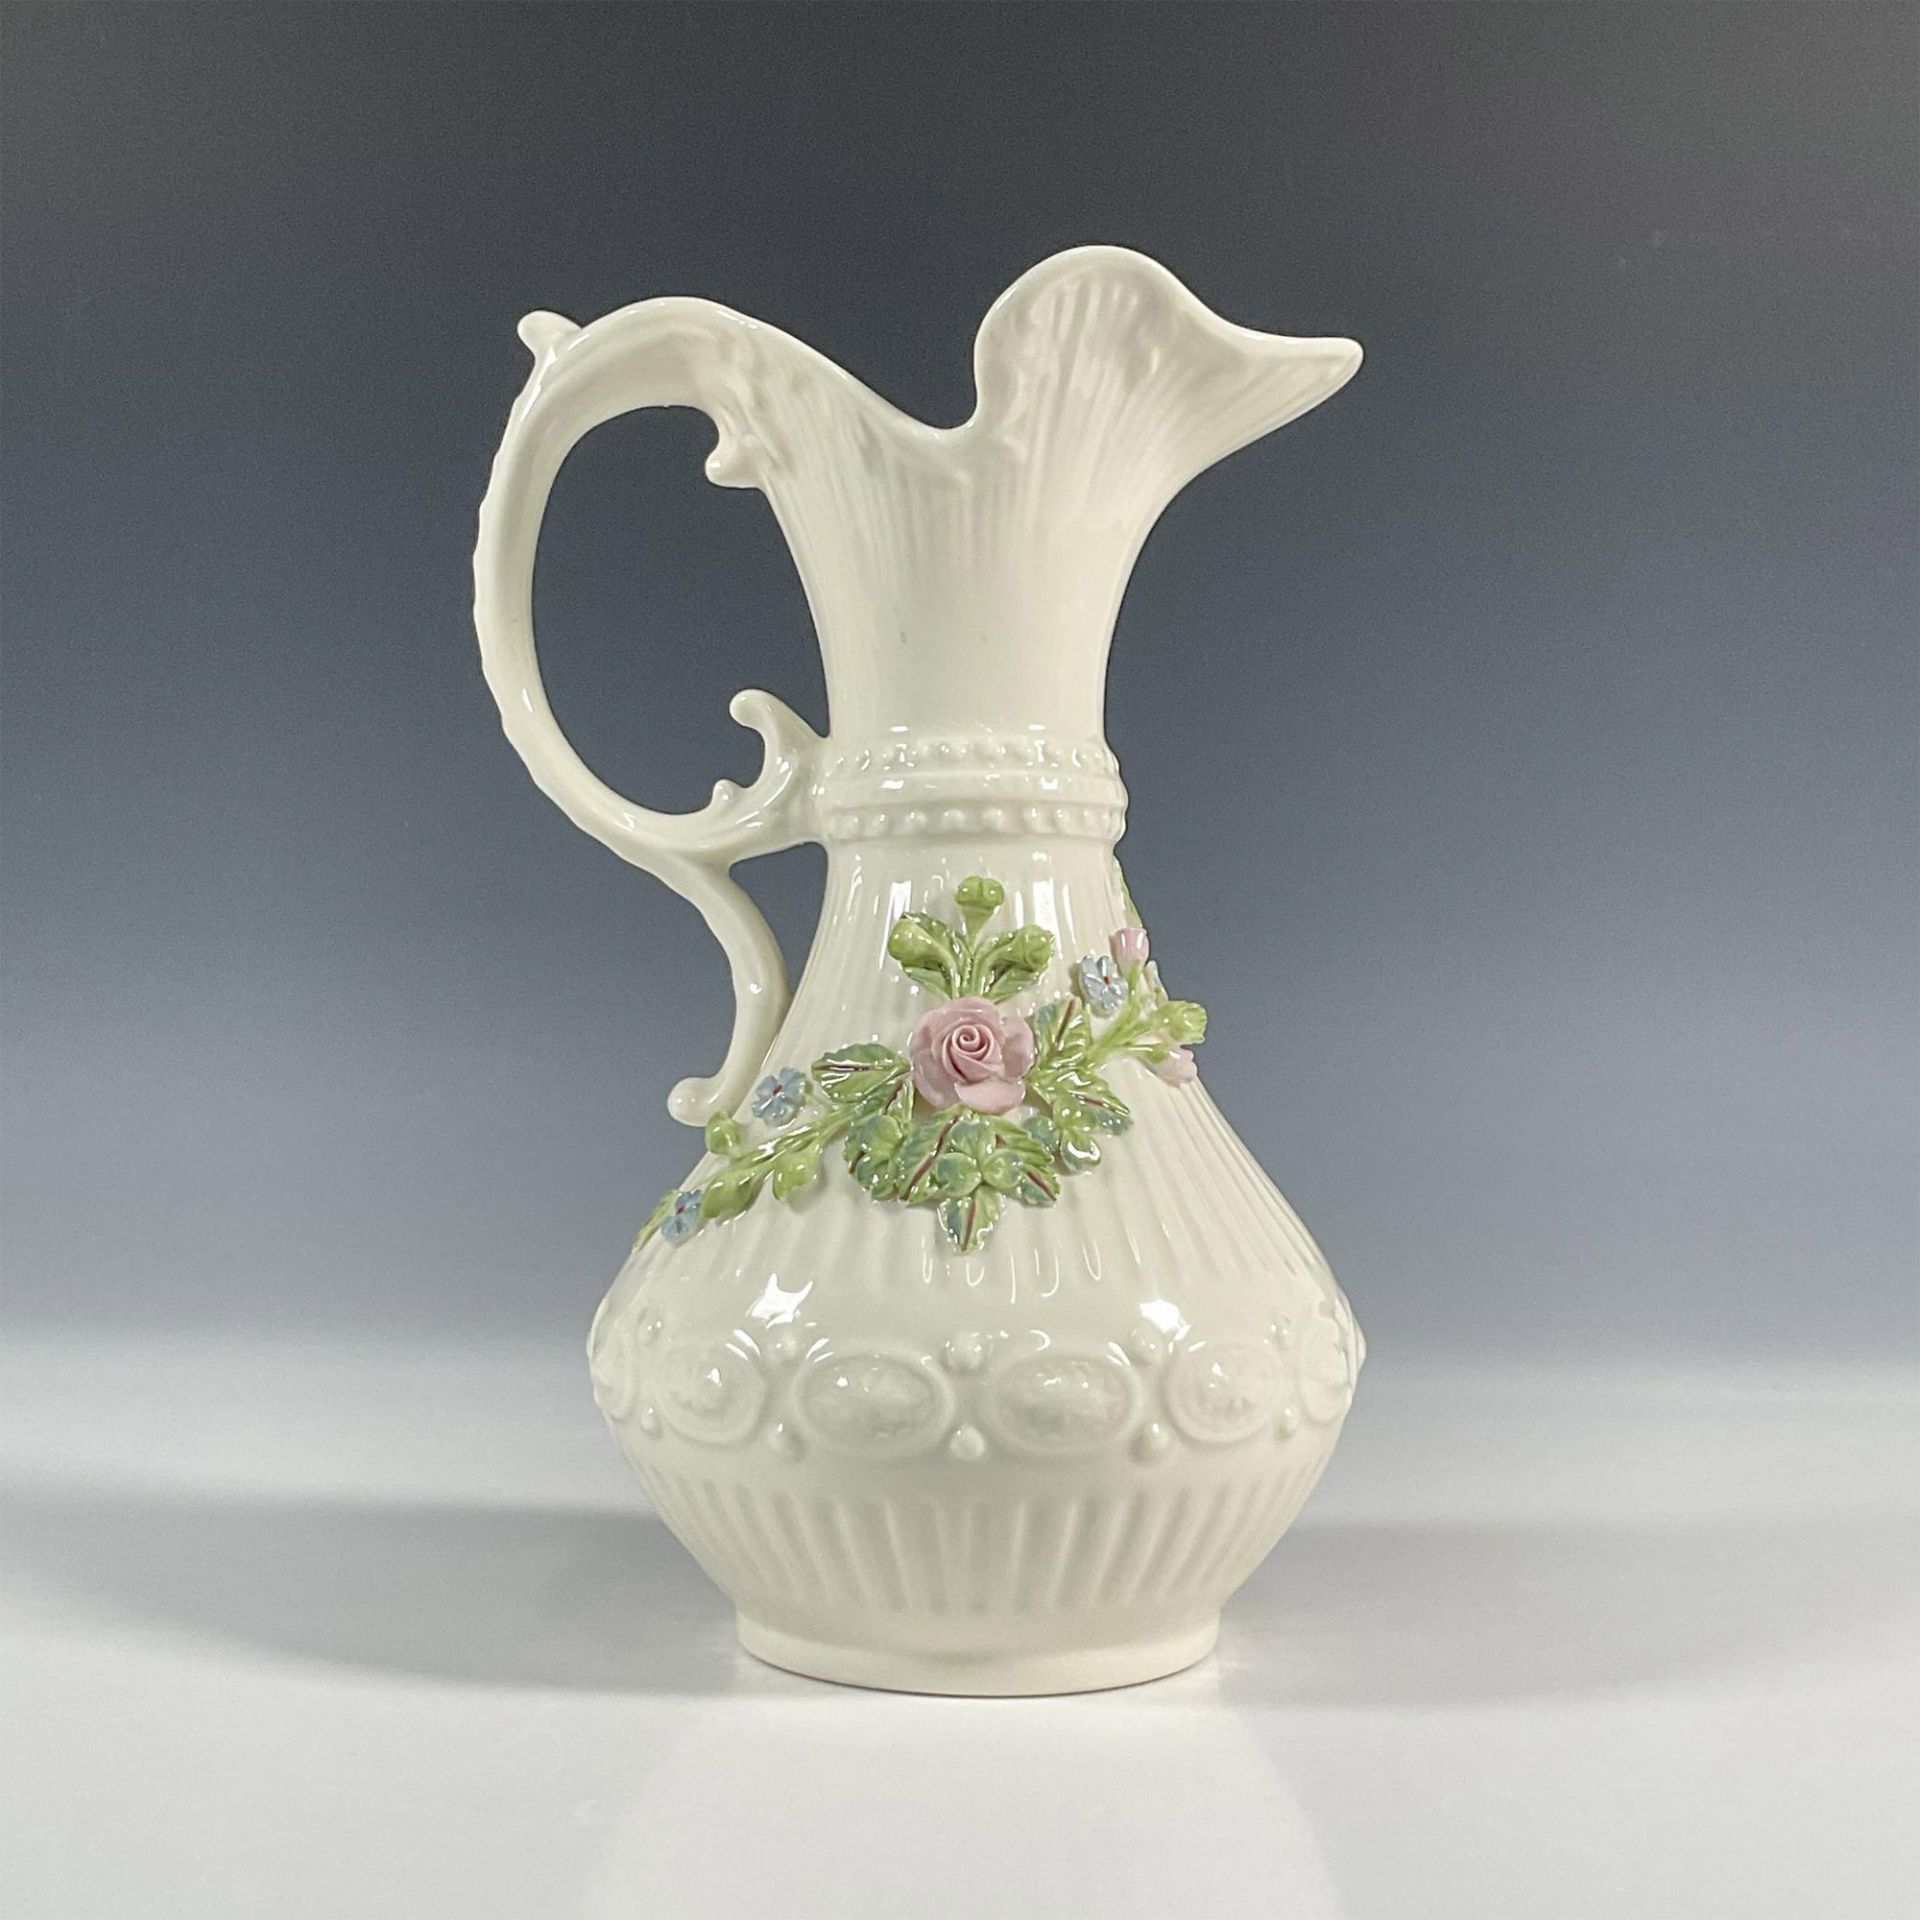 Belleek Pottery Porcelain Aberdeen Pitcher - Image 5 of 6